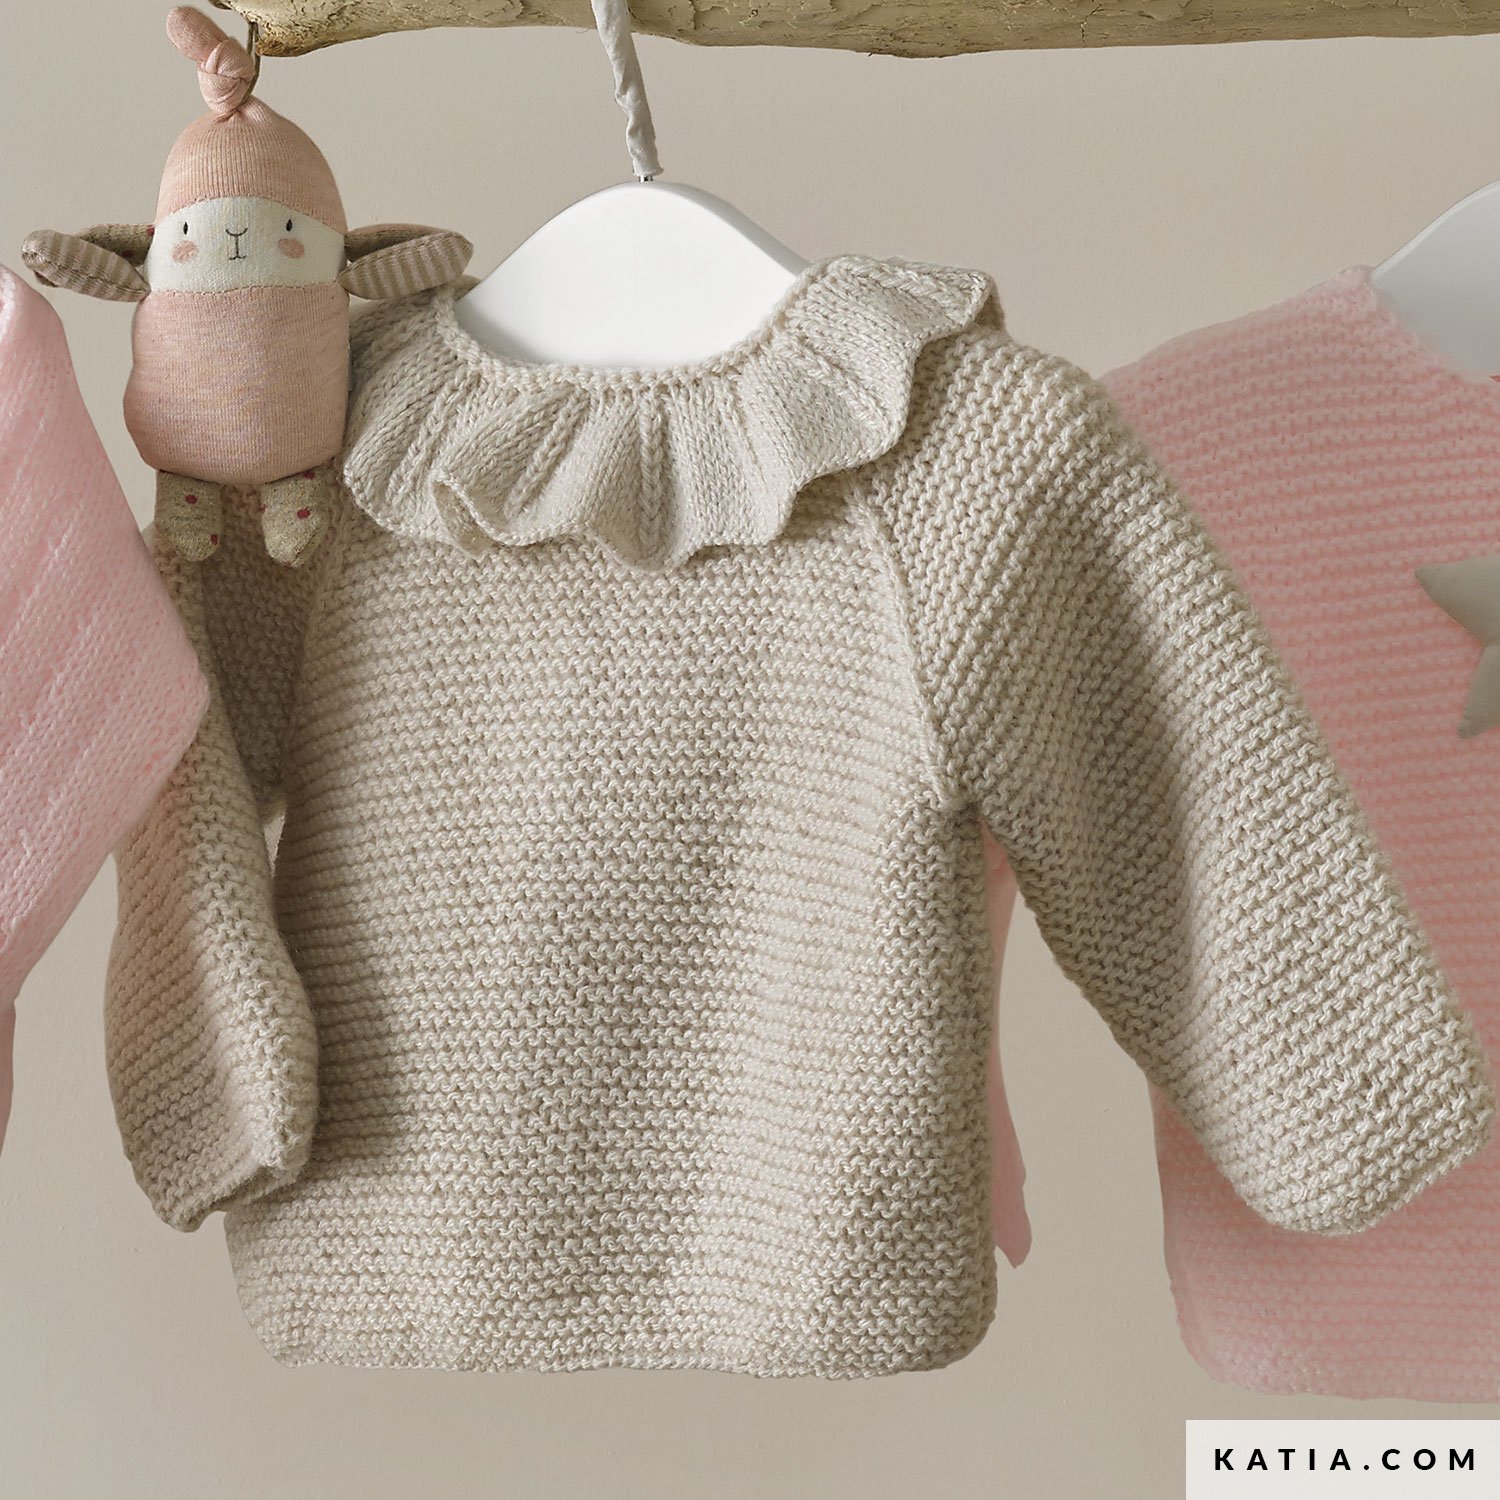 Hand knitted baby sweater Kleding Meisjeskleding Babykleding voor meisjes Truien 6-12 months mint turquoise green button shoulder jumper 